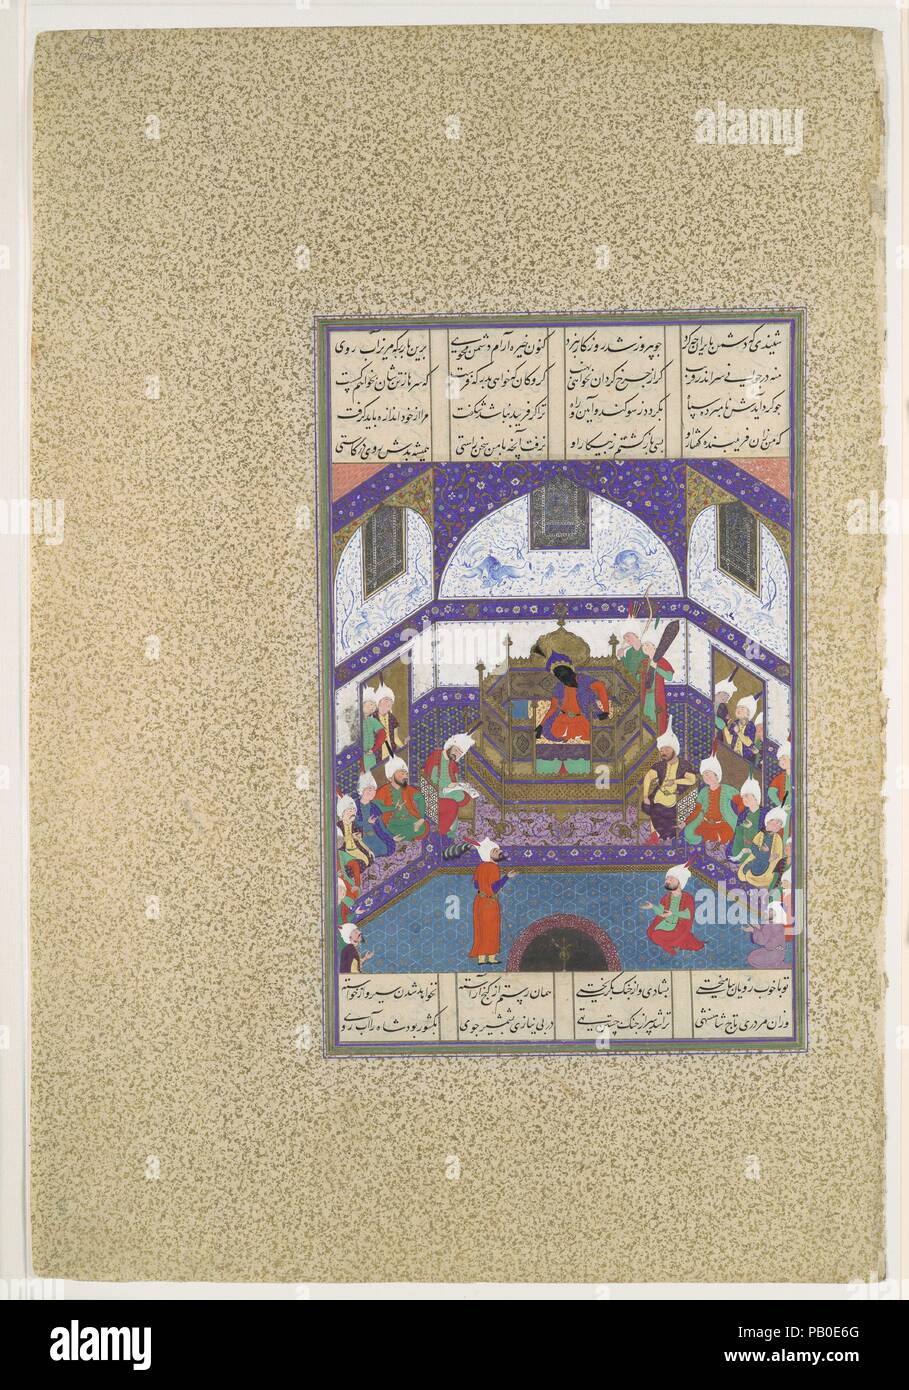 "Kai Kavus Upbraids Siyavush in una lettera", folio 174r dal Shahnama (Libro dei Re) di Shah Tahmasp. Artista: dipinto attribuito a 'Abd al-Vahhab. Autore: Abu'l Qasim Firdausi (935-1020). Dimensioni: Pittura: H. 11 a. (28 cm) W. 7 3/16 in. (18,3 cm) Pagina: H. 18 5/8 in .(47,3 cm) W. 11 11/16 in. (29,7 cm) tappeto: H. 22 a. (55,9 cm) W. 16 a. (40,6 cm). Direttore del workshop: Mir Musavvir (attivo 1525-60). Data: ca. 1525-30. Quando Rustam reca la notizia della pace a Kavus Kai, Lo shah si rifiuta di credere che il gesto è in buona fede. Egli allevia Rustam del suo comando dell'esercito e appo Foto Stock